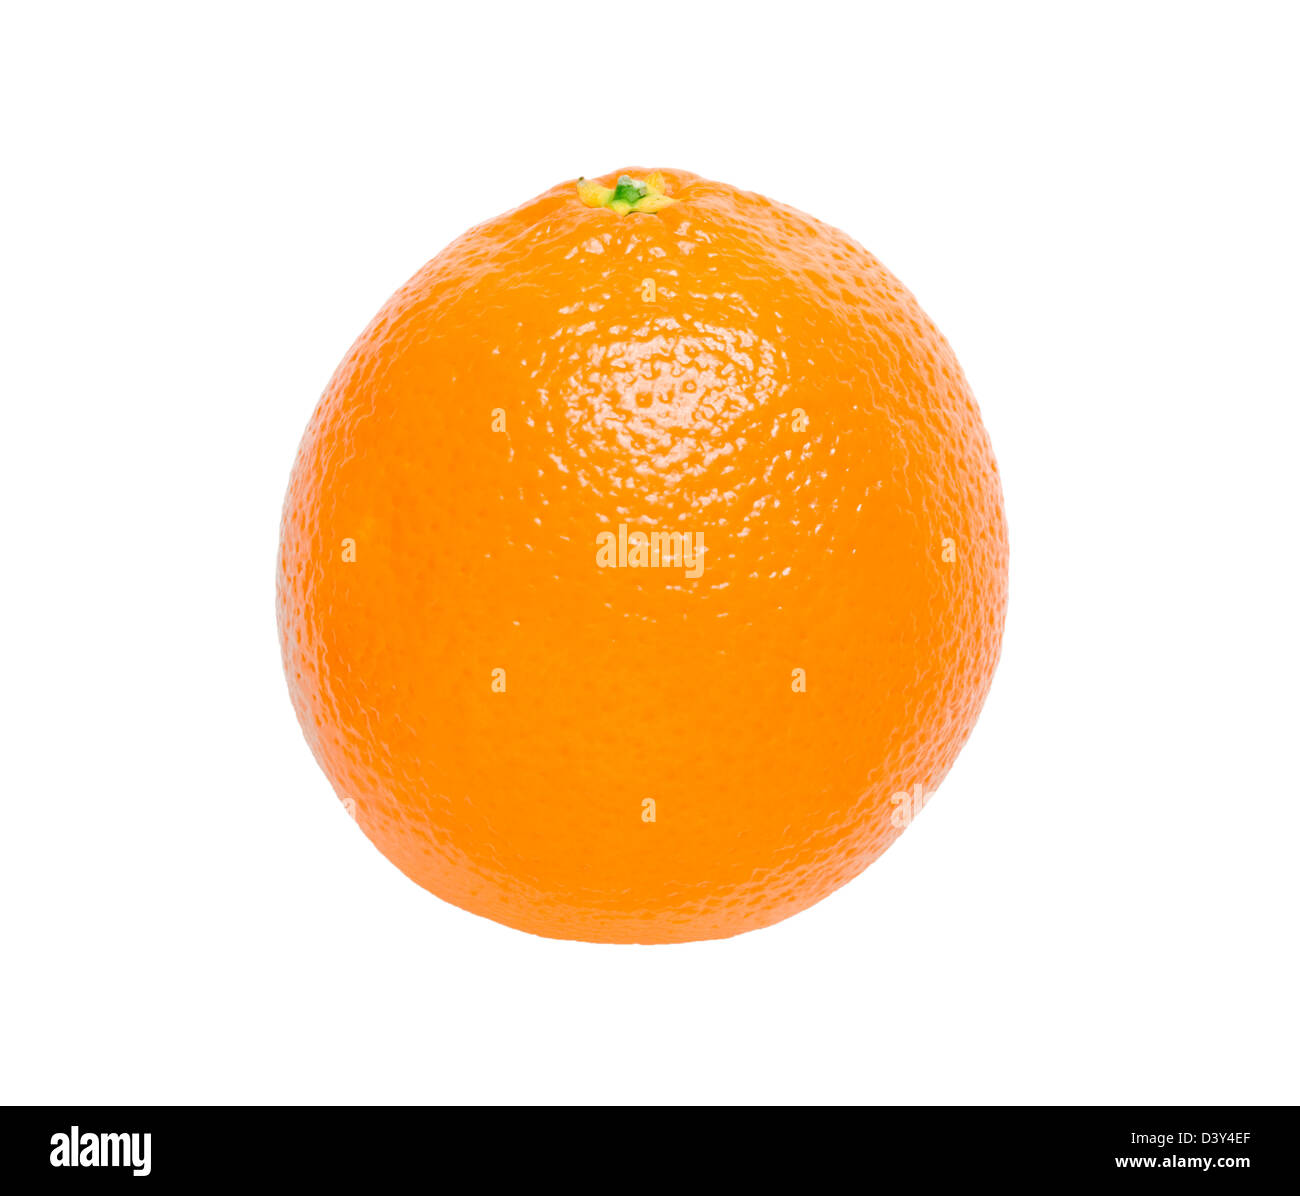 Orange. Stock Photo